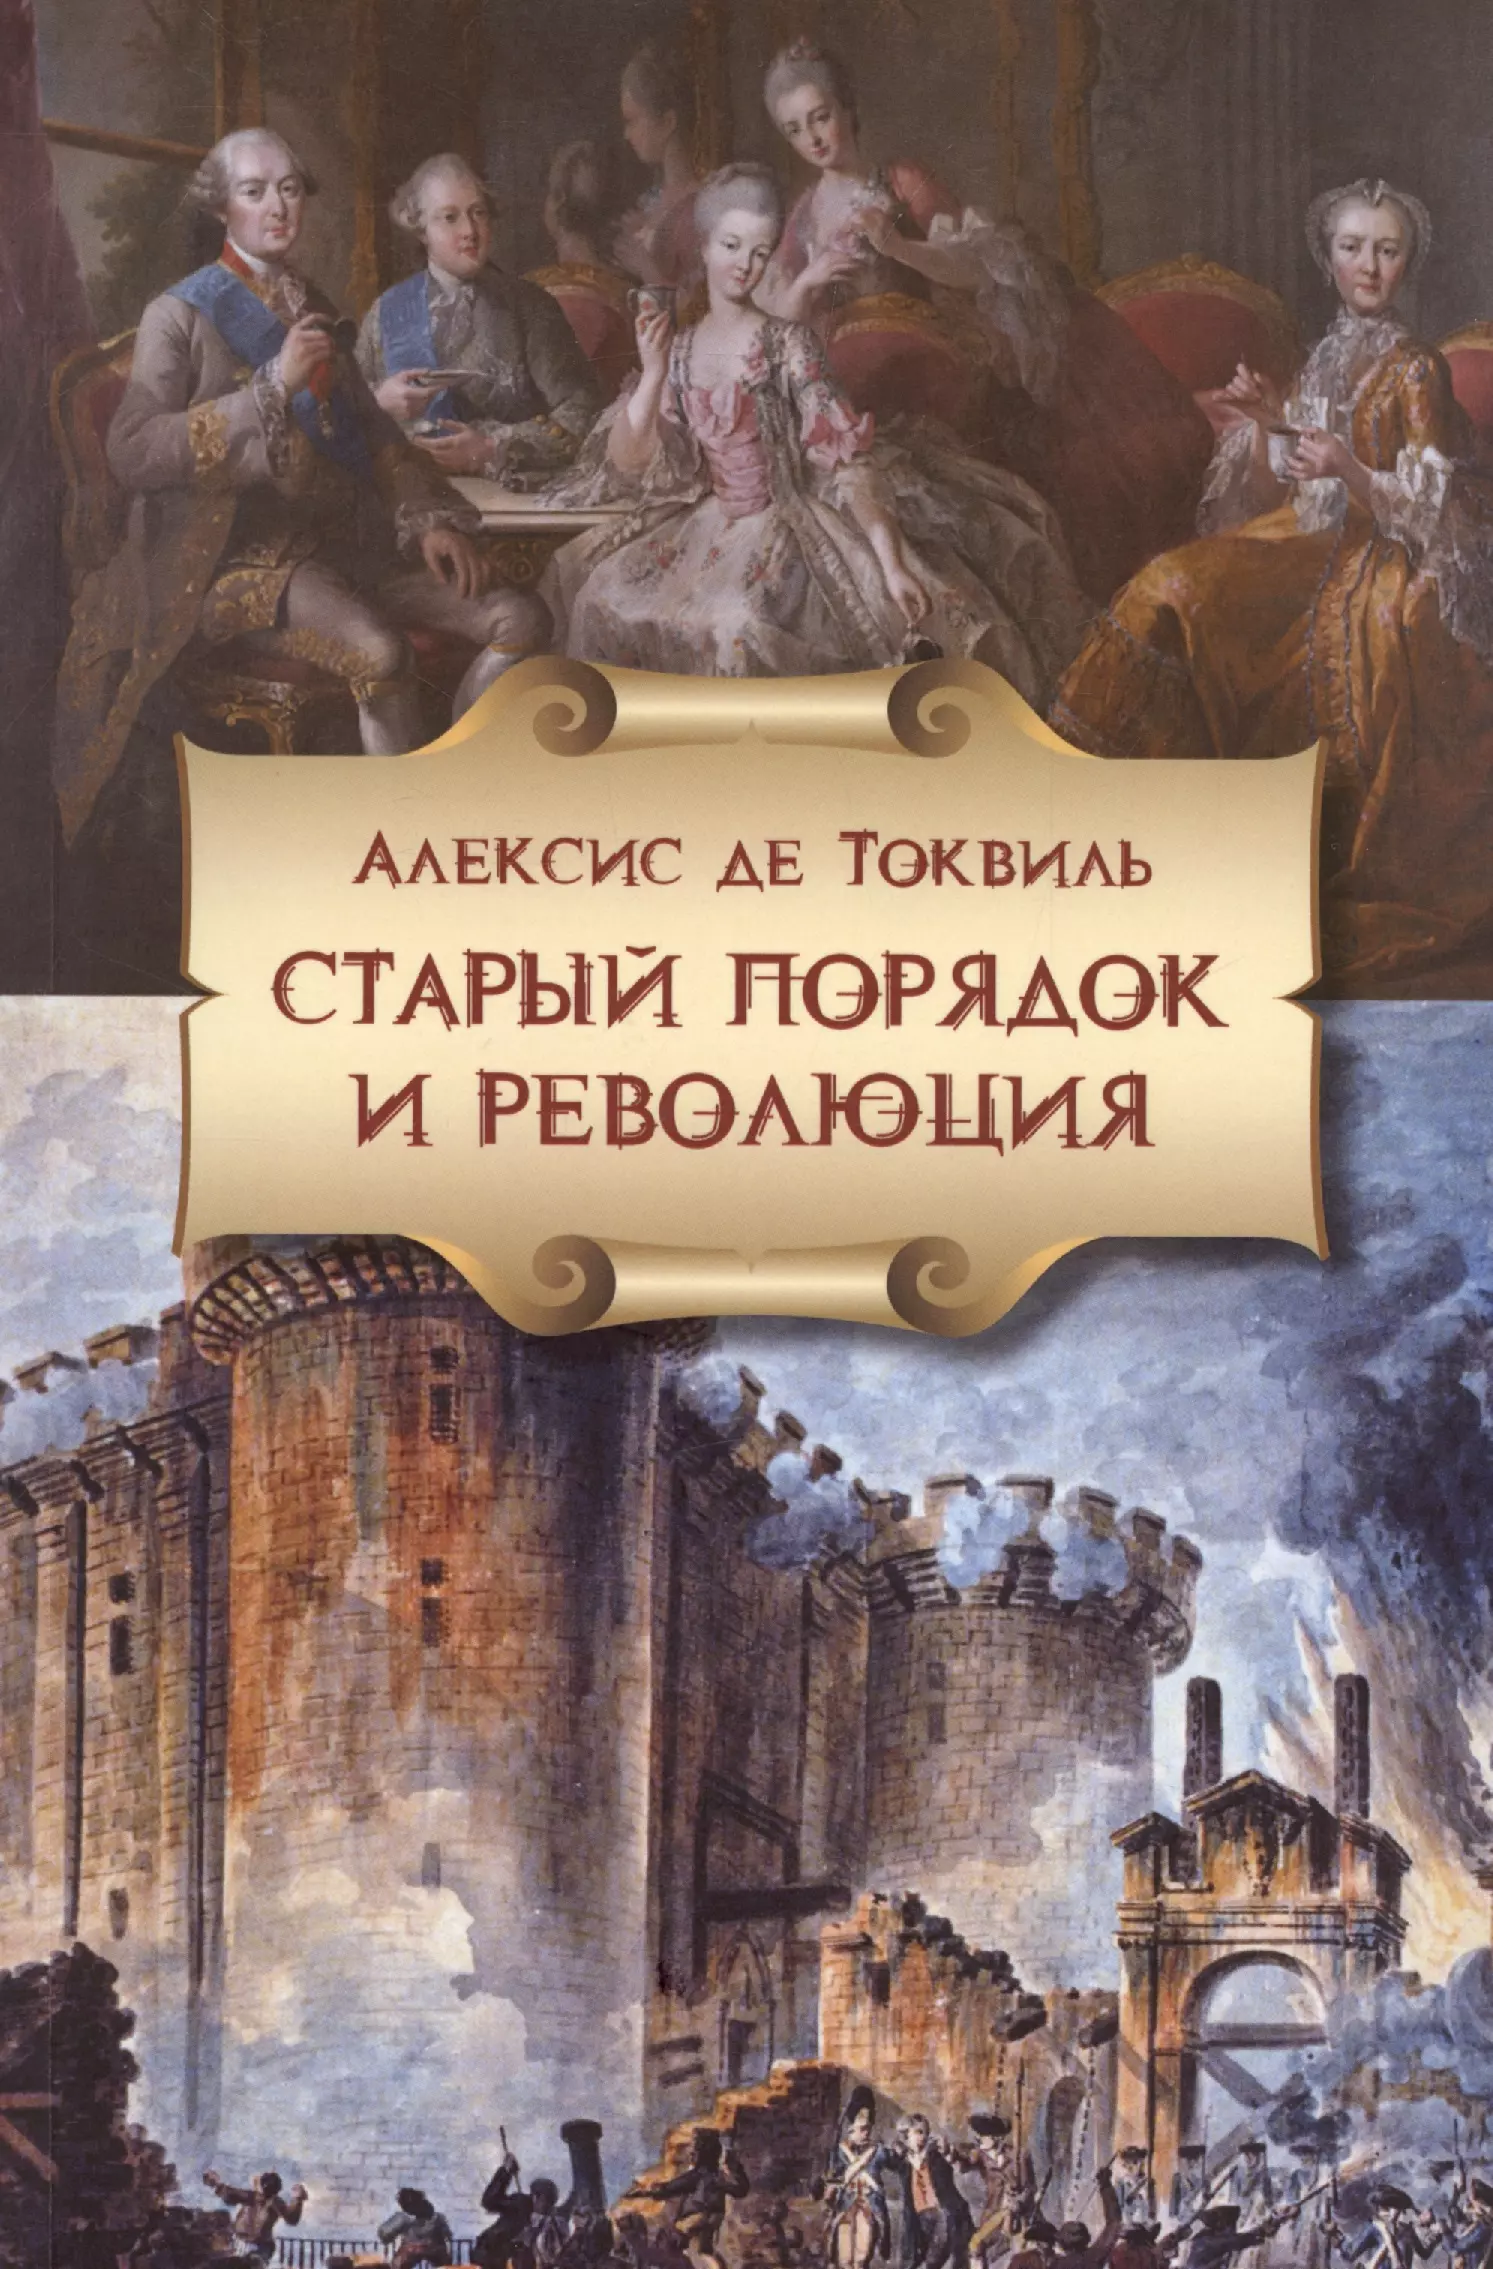 Токвиль Алексис де Старый порядок в революции (6, 7 изд.) (мБ-каГВЛ История) Токвиль